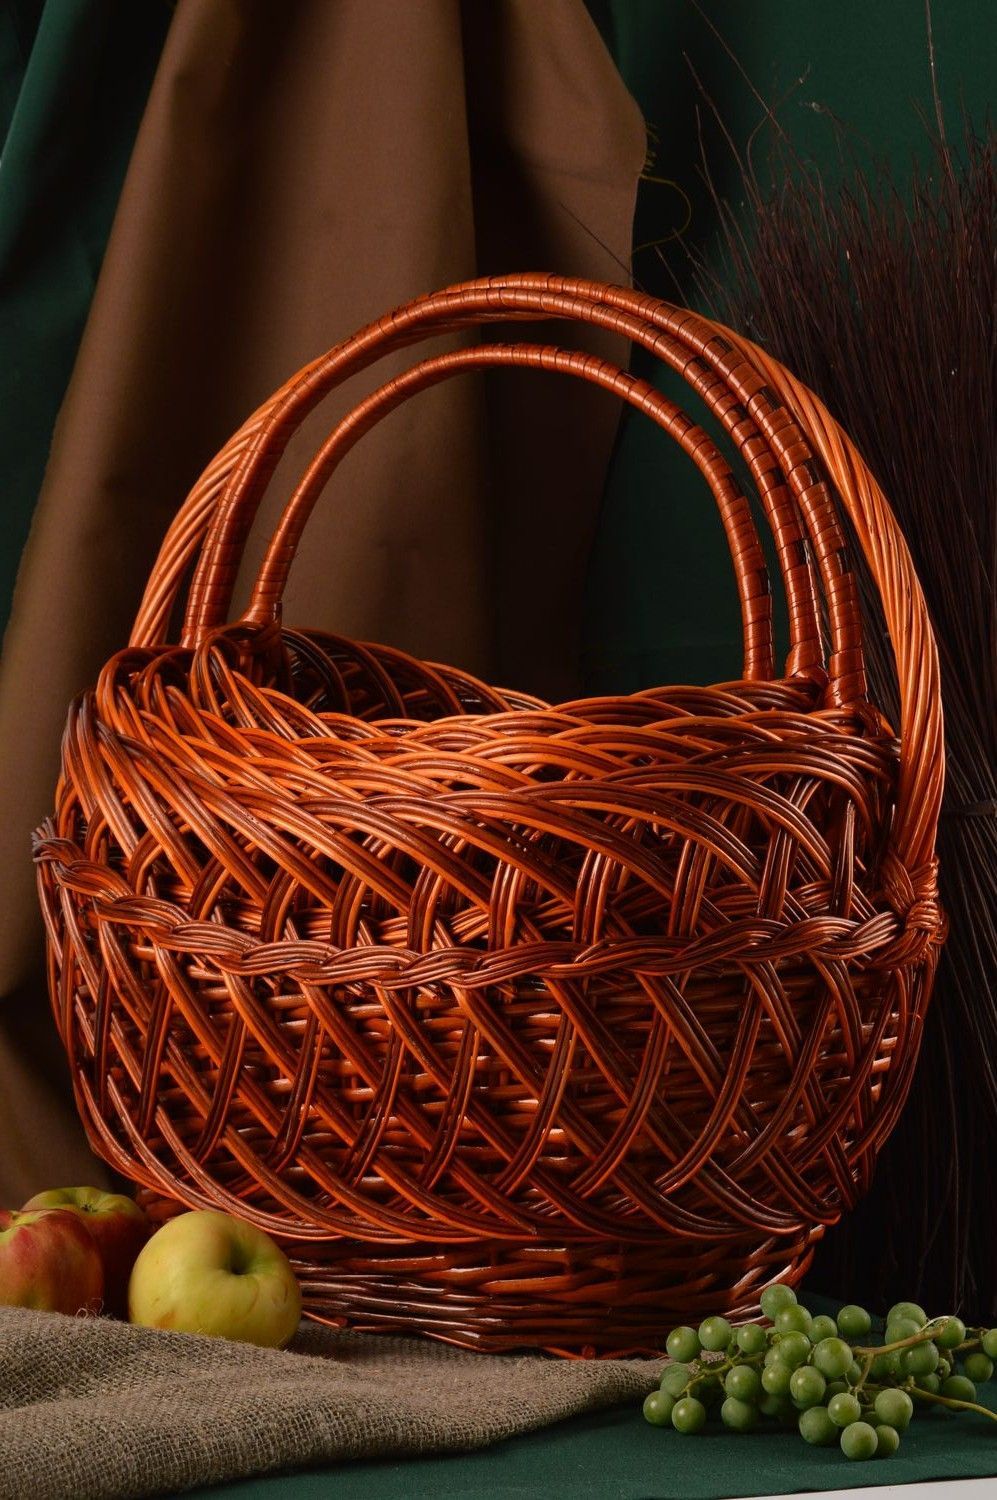 Handmade designer woven baskets 4 baskets for Easter decorative baskets photo 1